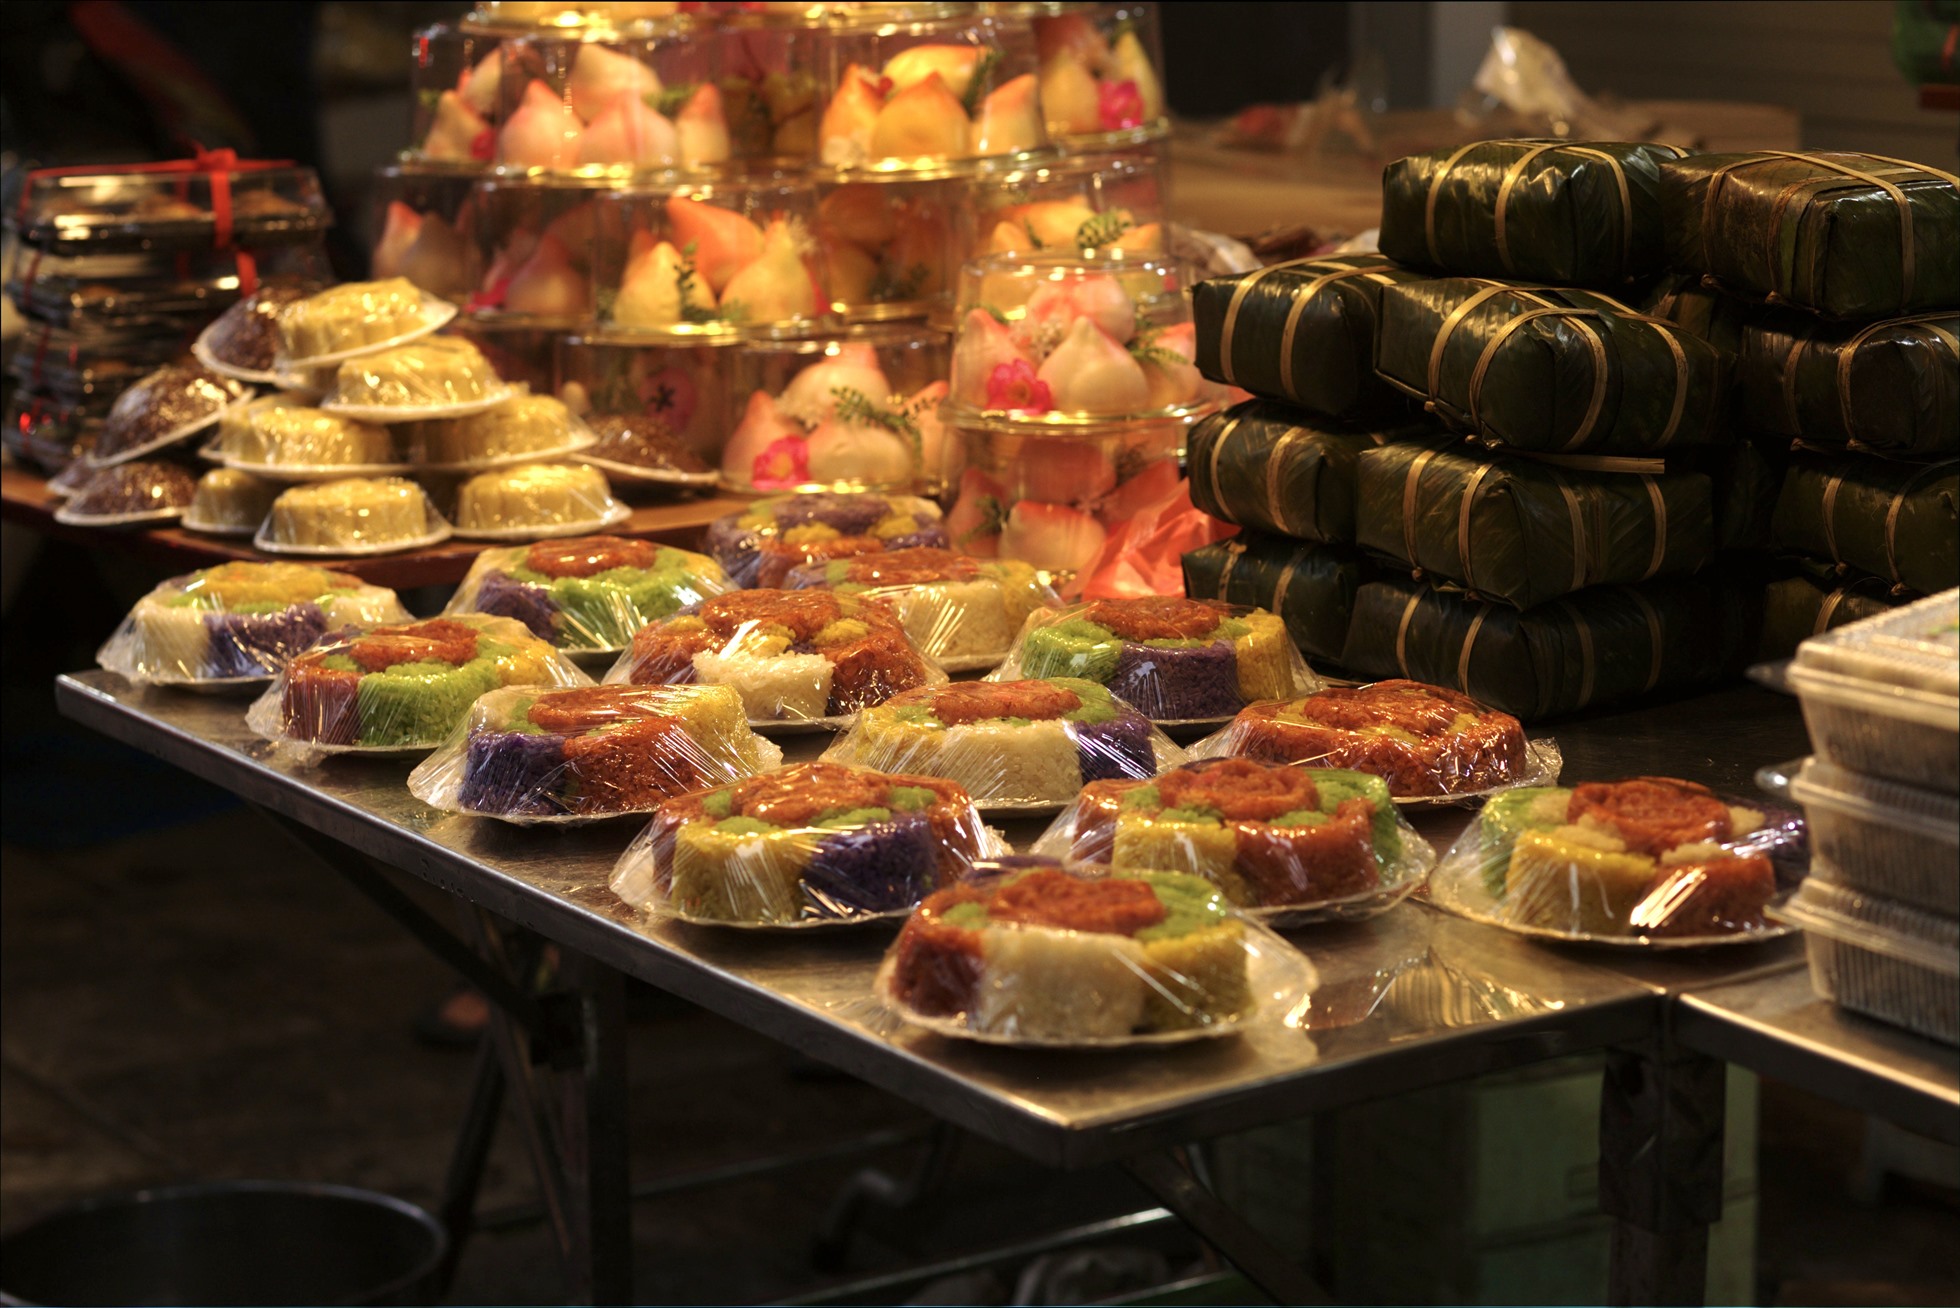 Khu chợ ẩm thực nhà giàu này hội tụ nhiều món ngon, đồ cúng lễ làm sẵn nên được nhiều người tìm đến mua.